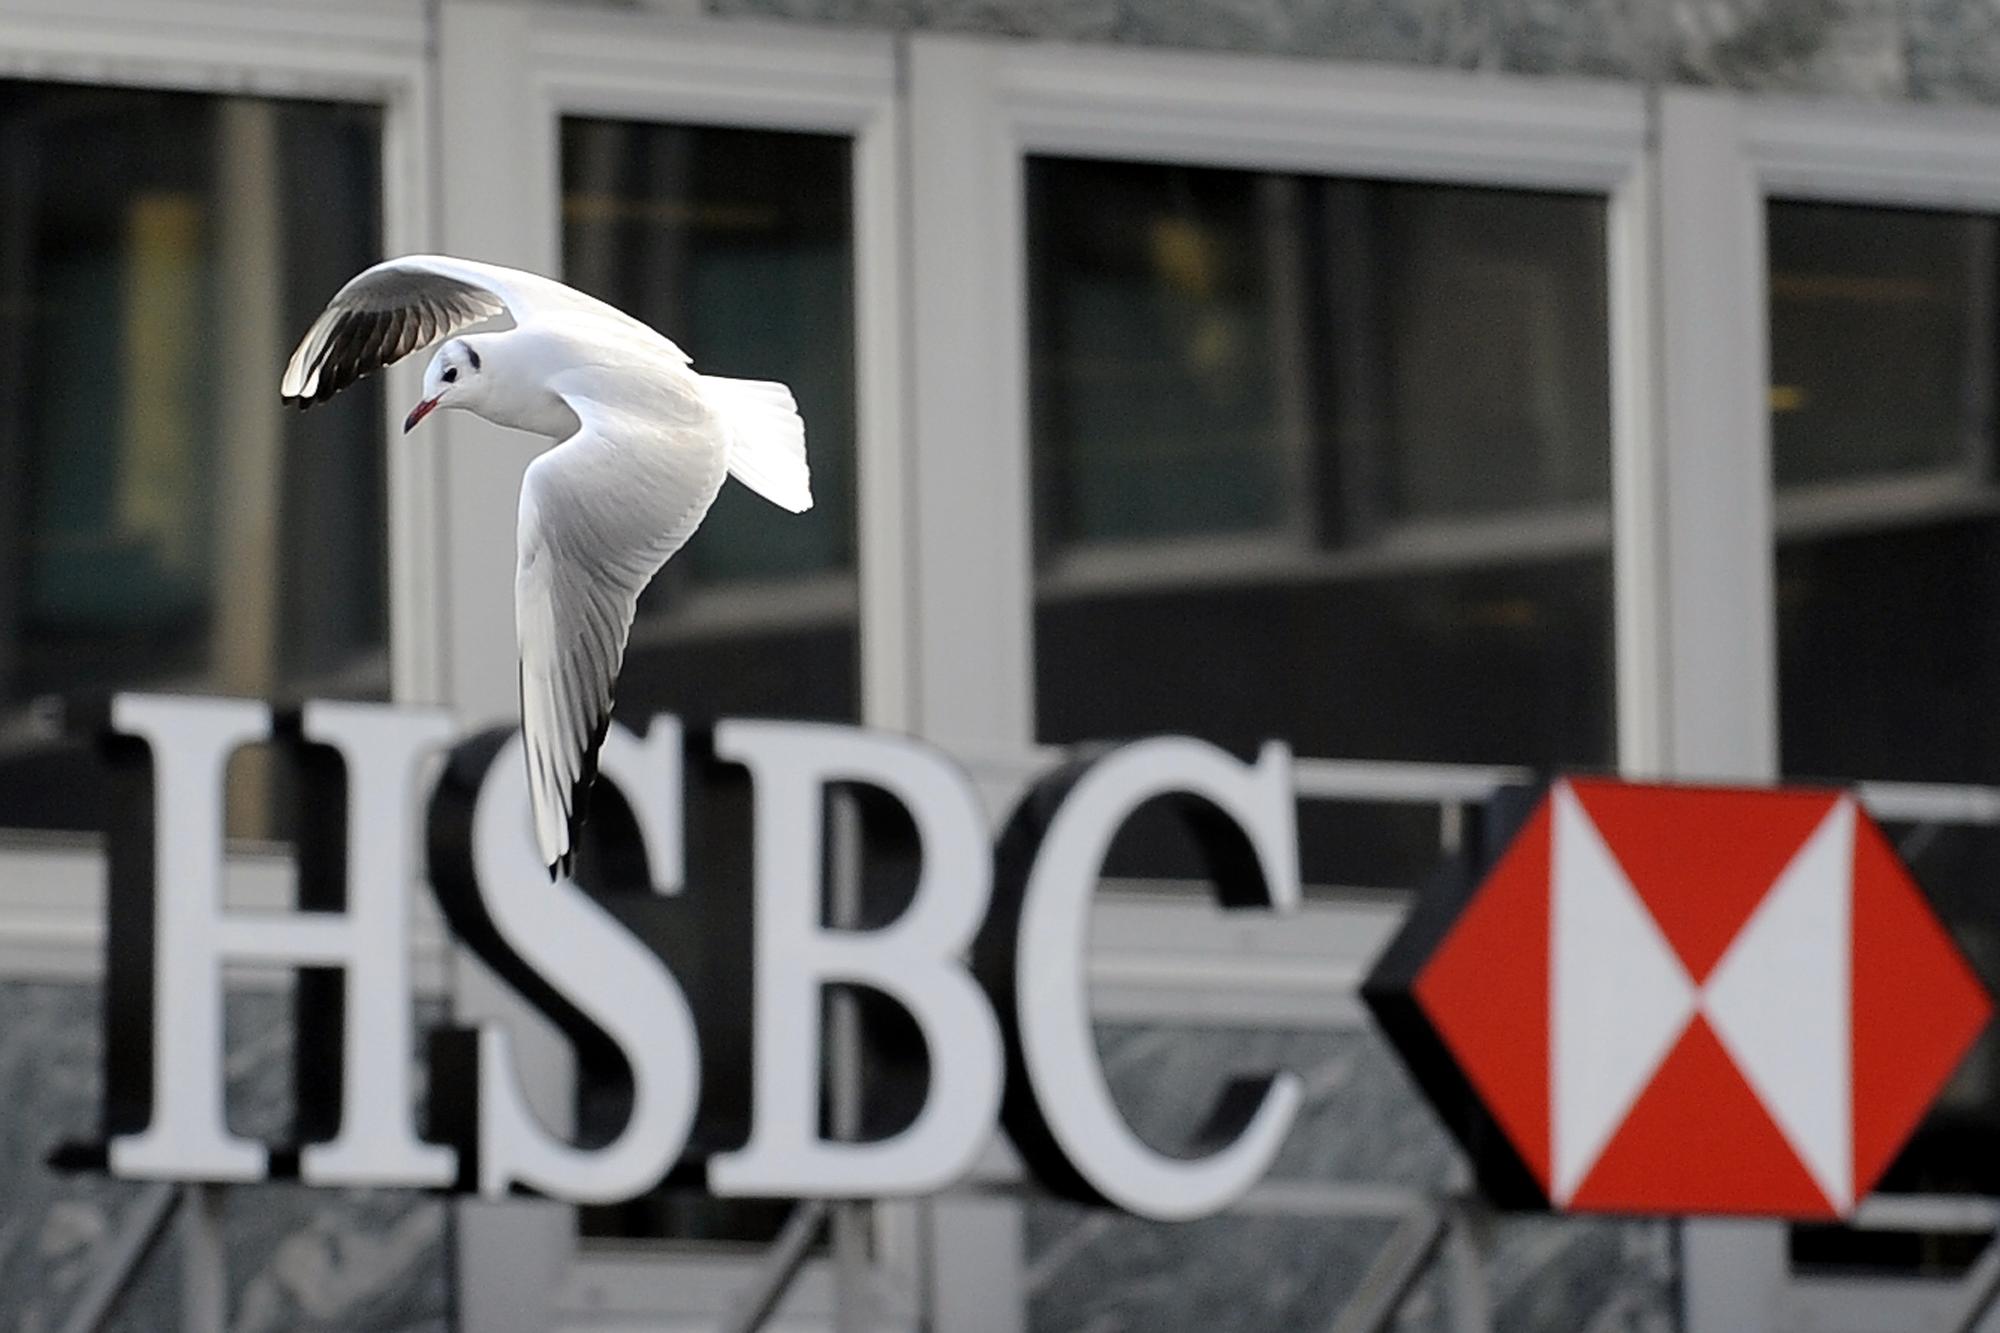 Malgré un système massif d’évasion fiscale, la filiale suisse de HSBC échappera à un procès et réussira à solder les poursuites par le versement d'une amende. [Keystone - FABRICE COFFRINI]